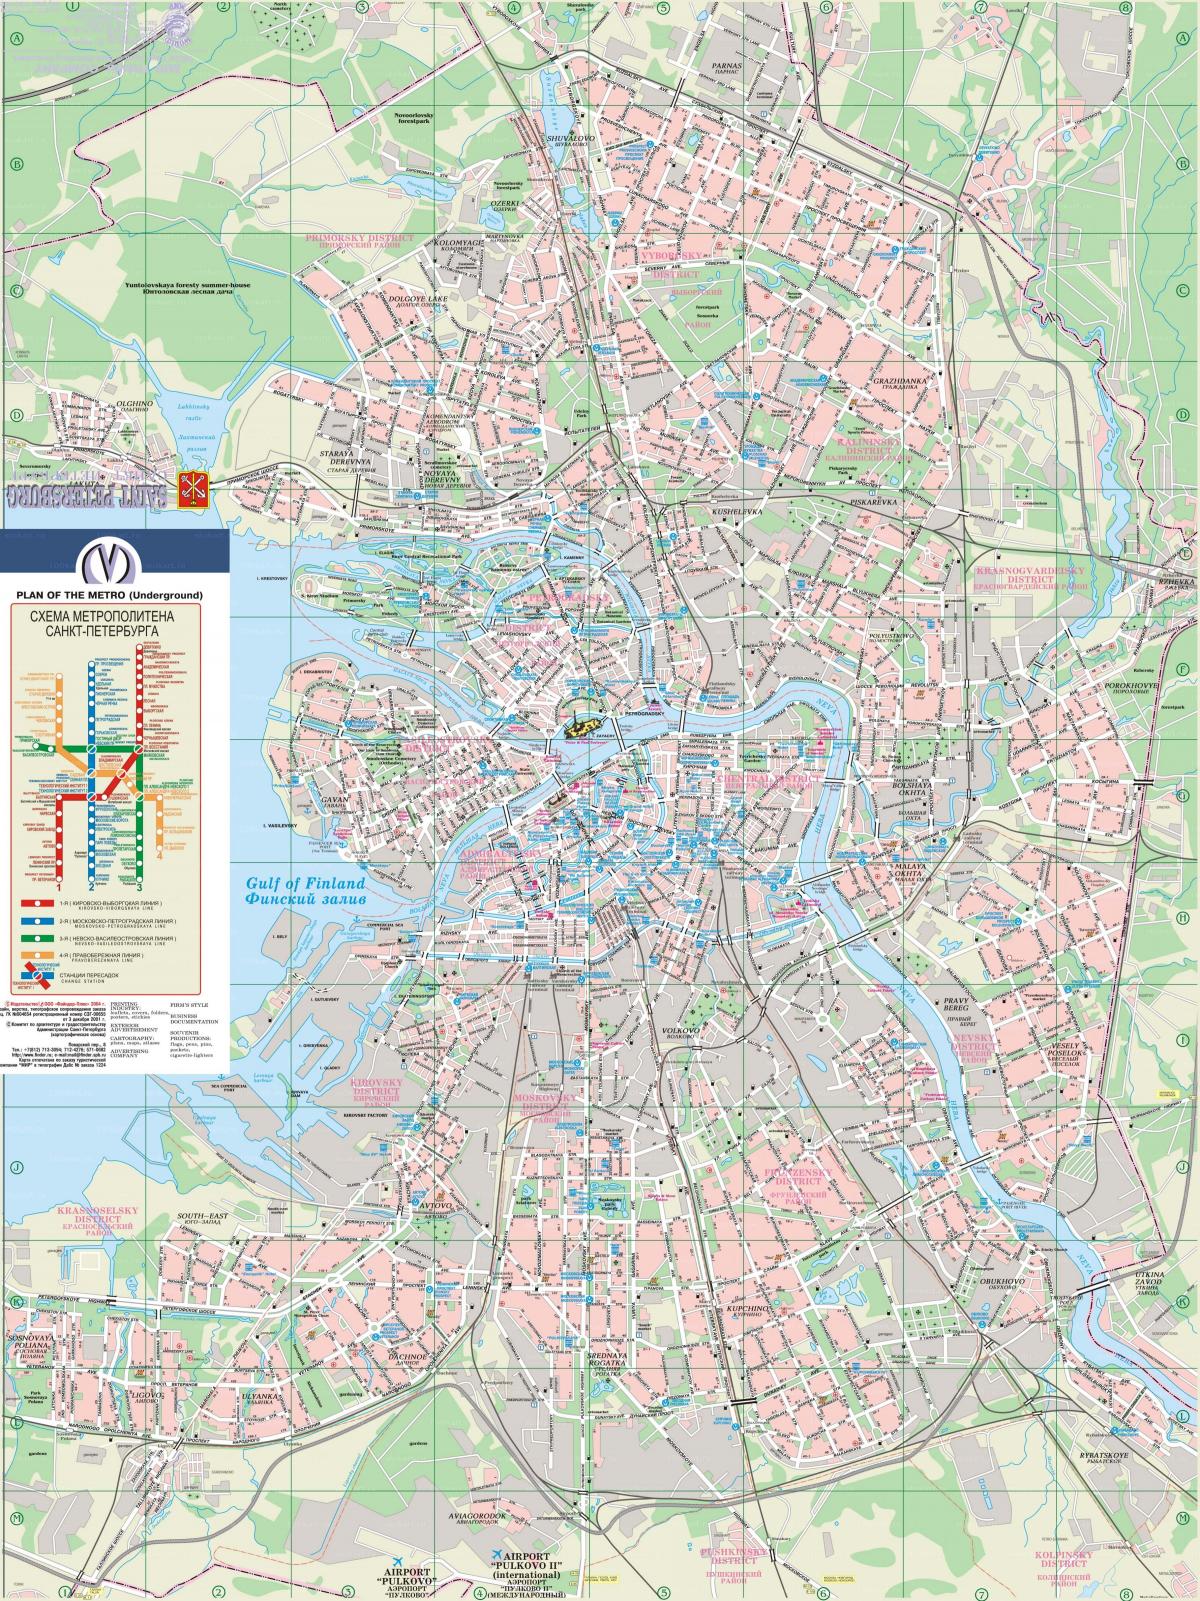 Plan des rues de St Petersburg